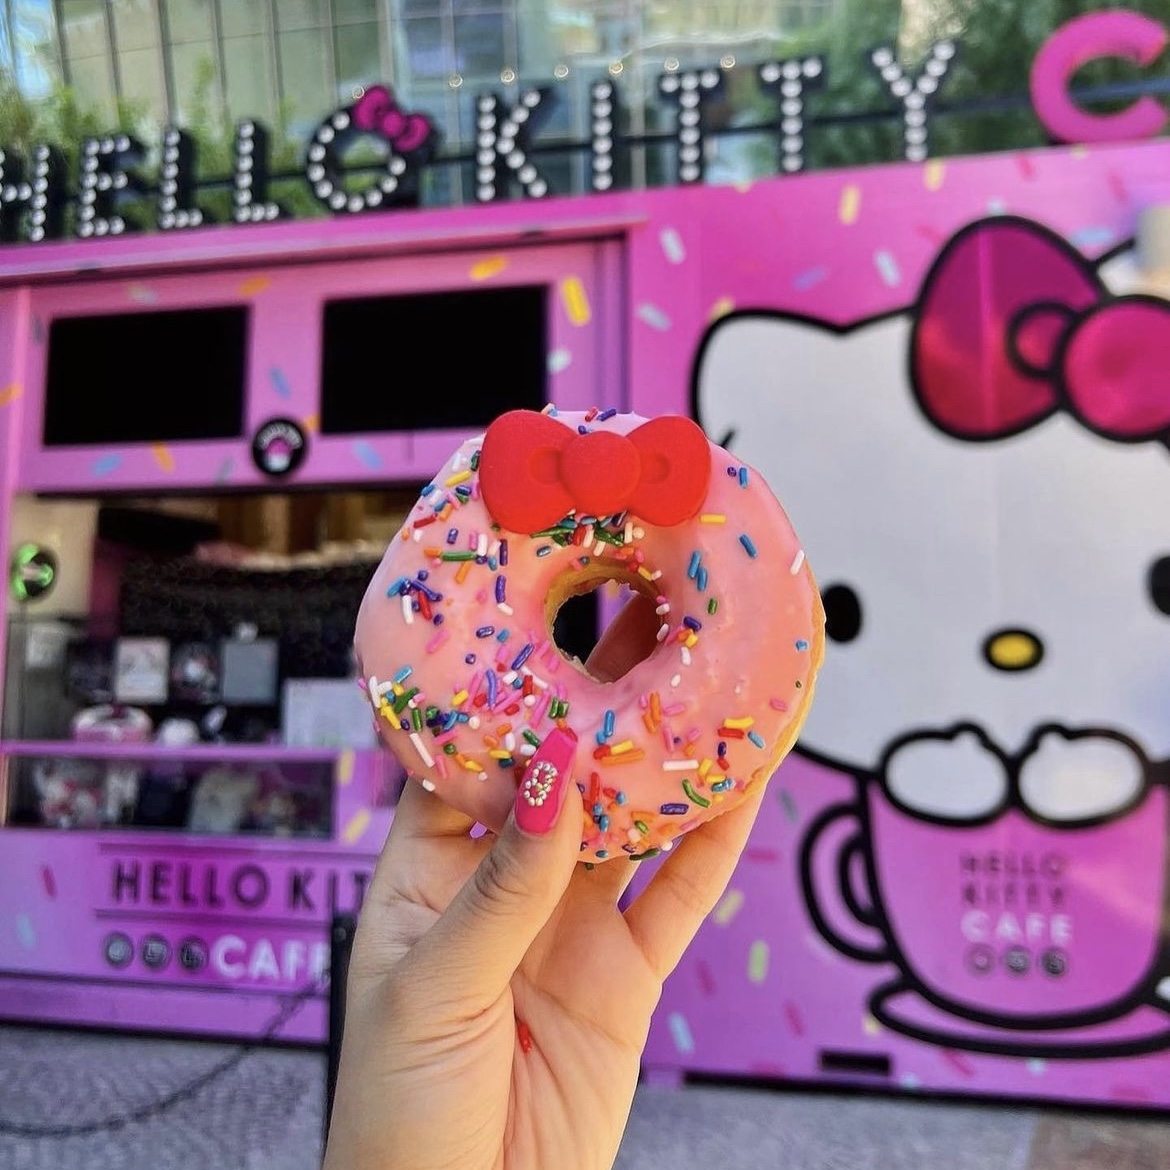 Hello Kitty Café in Las Vegas